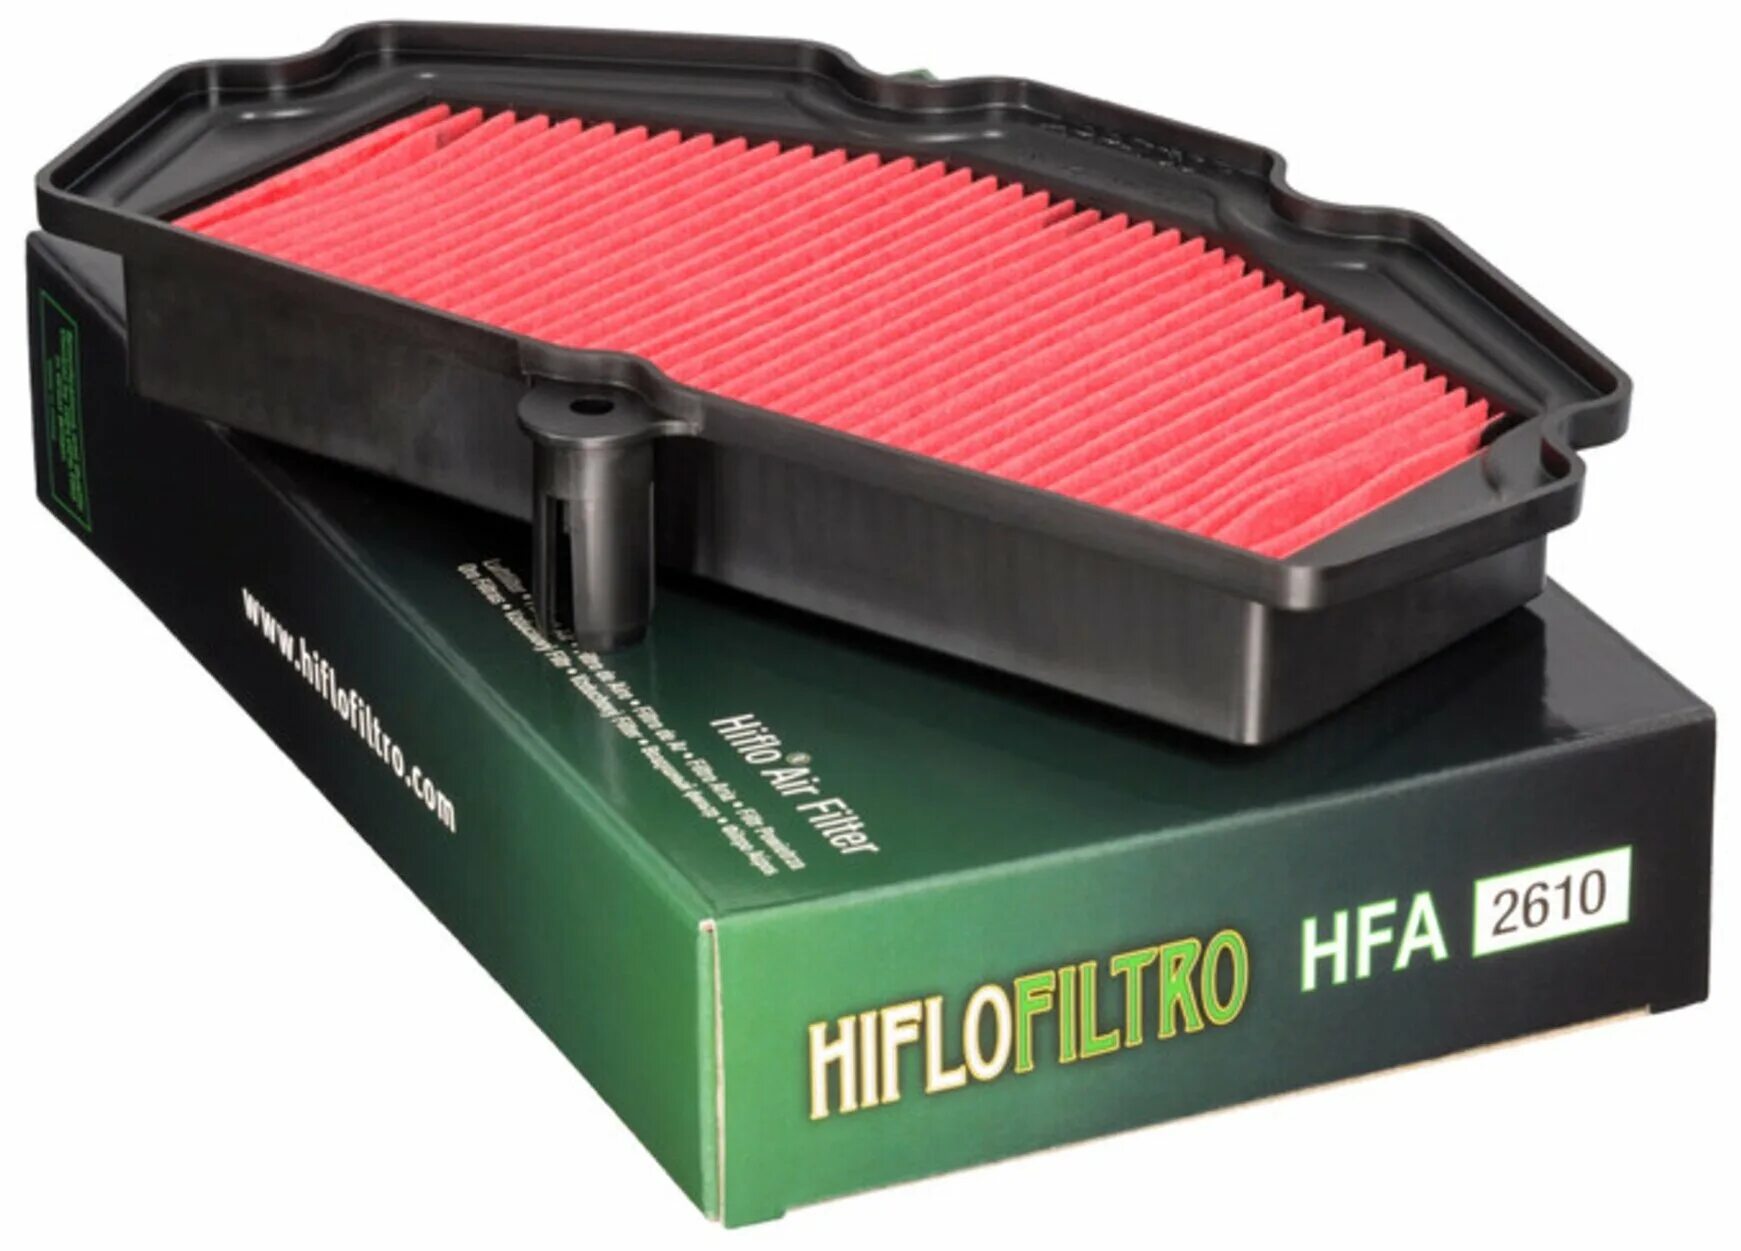 Фильтр воздушный HIFLO hff4012. Фильтр воздушный hfa2610. Воздушный фильтр Kawasaki 11013. Воздушный фильтр HIFLO Kawasaki 2607.